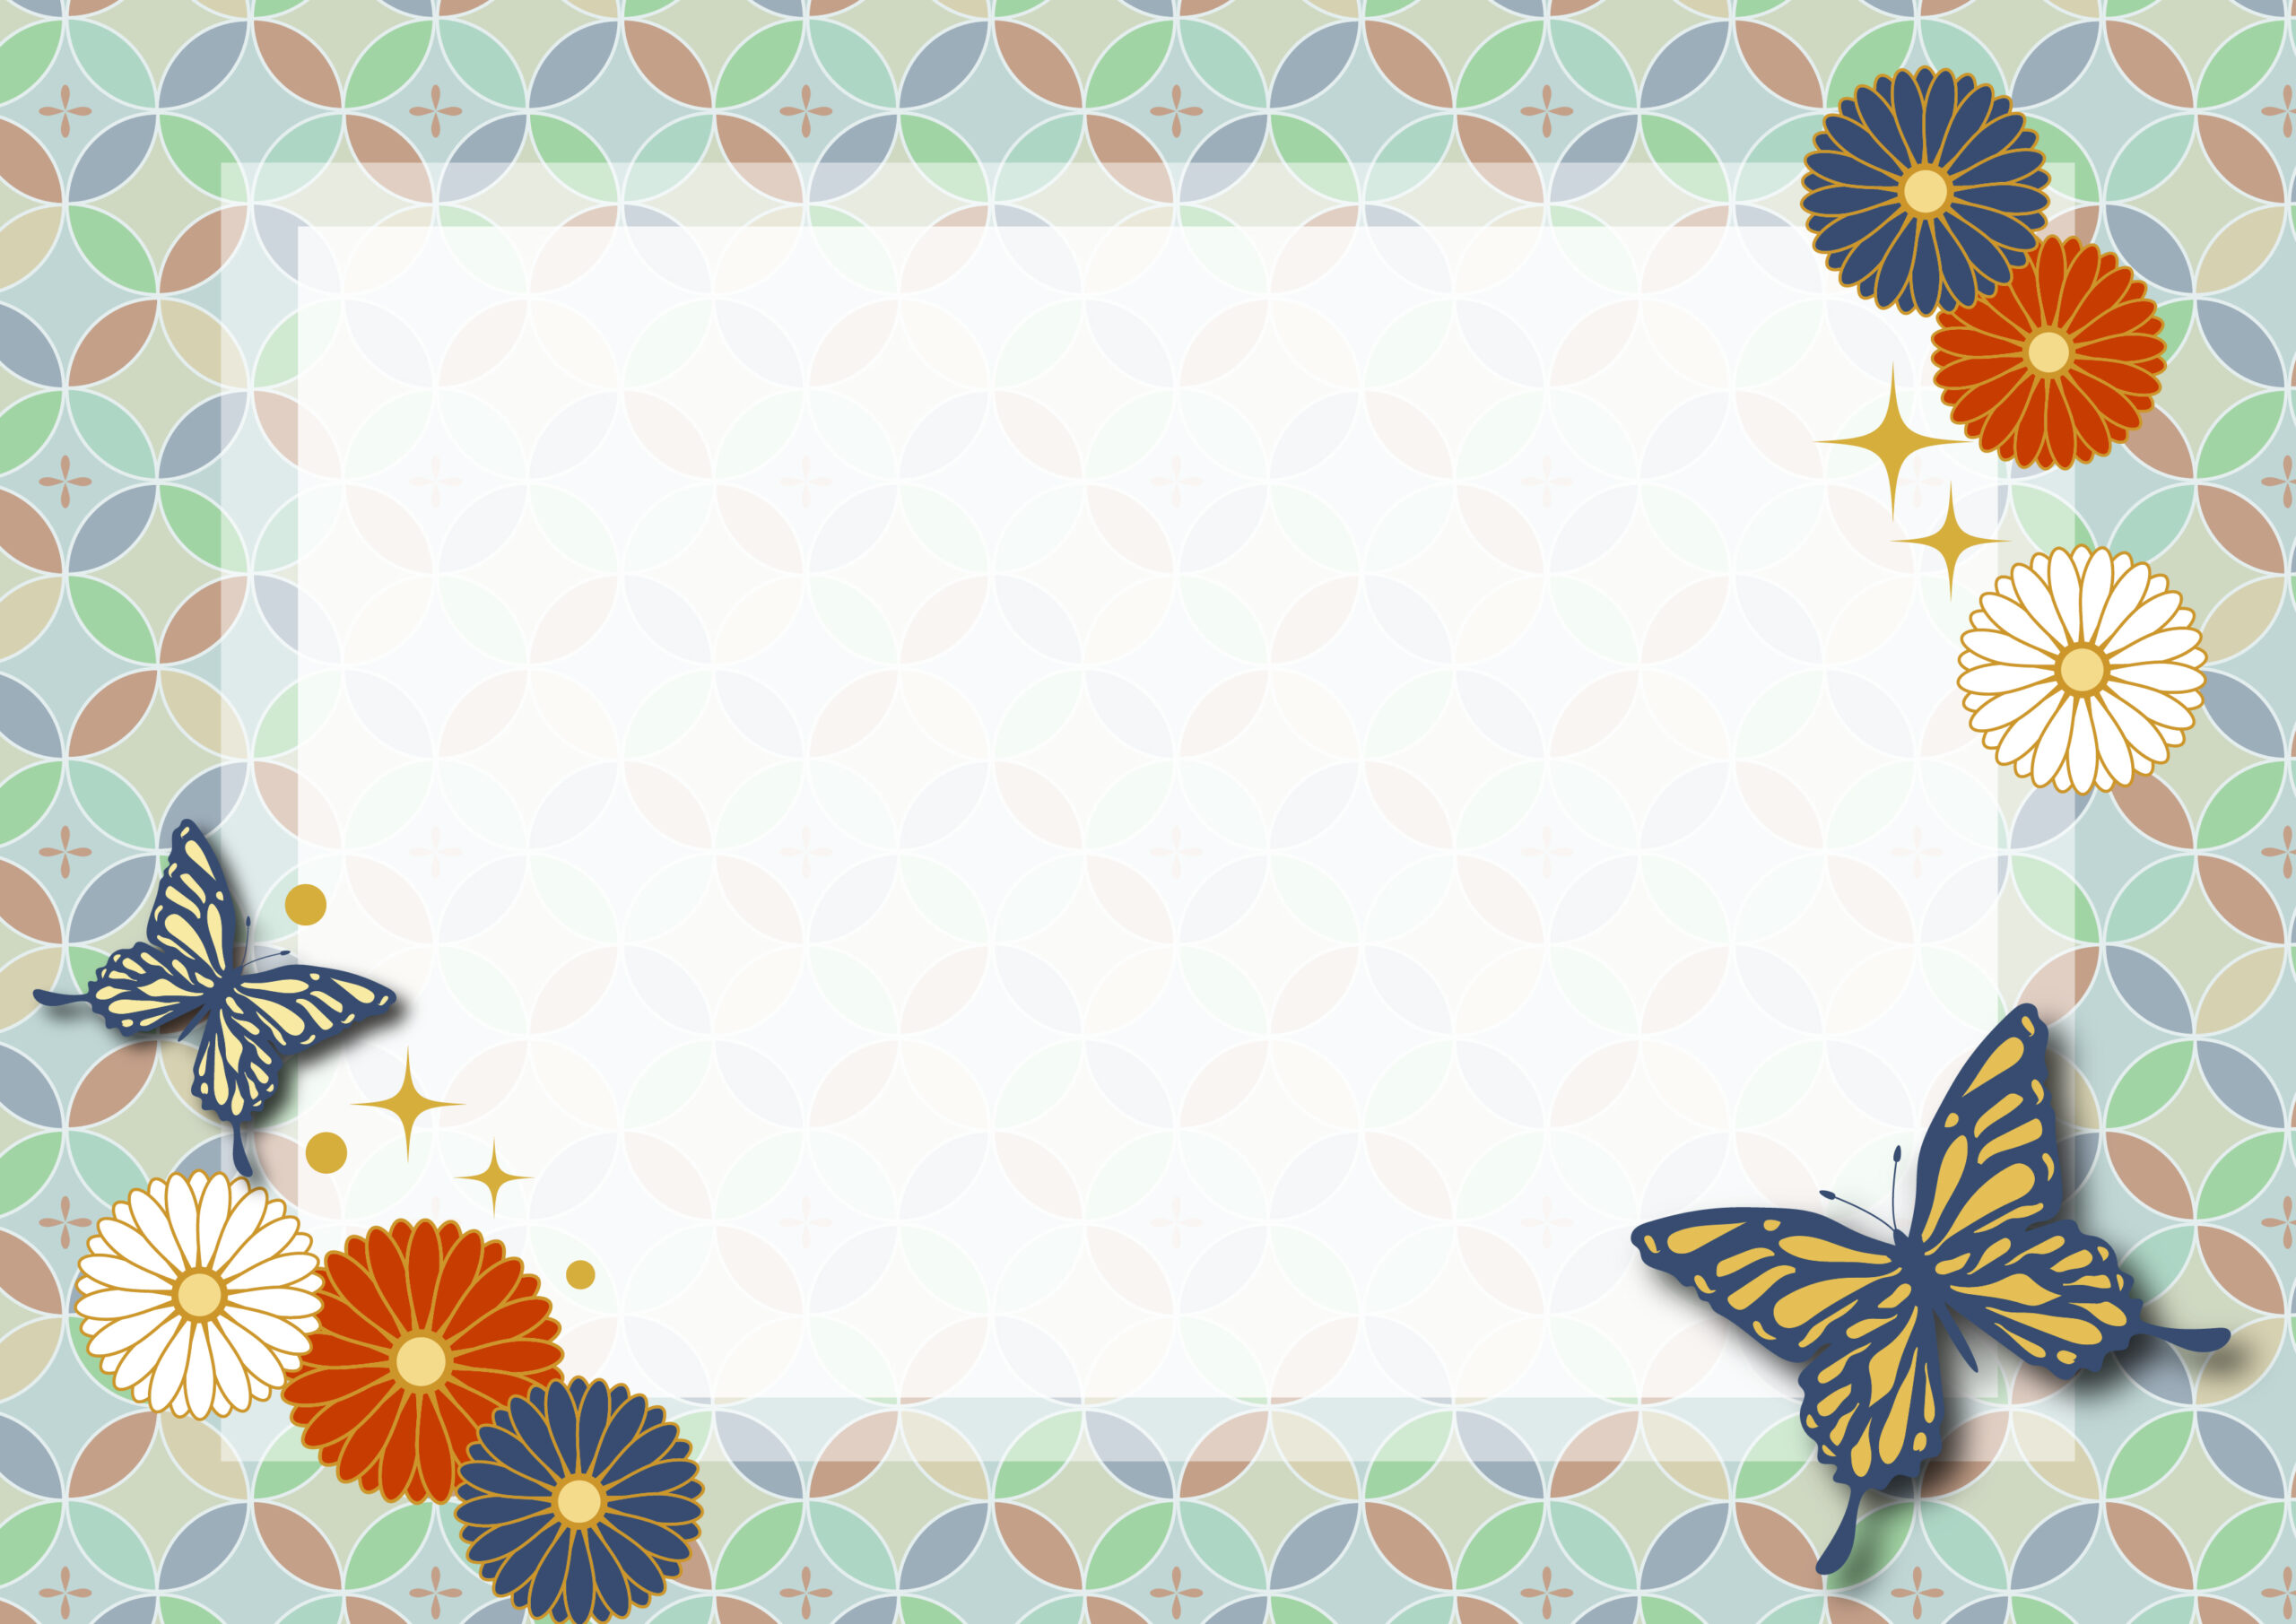 お祝いメッセージカードや、フォトフレームの用途で使えるかわいいフレーム素材！菊と蝶々のイラスト入りで和風テイストのデザインがおしゃれです。結婚や出産のお祝いや誕生日、記念日のお手紙の飾り枠におすすめします。ダウンロード：JPGA